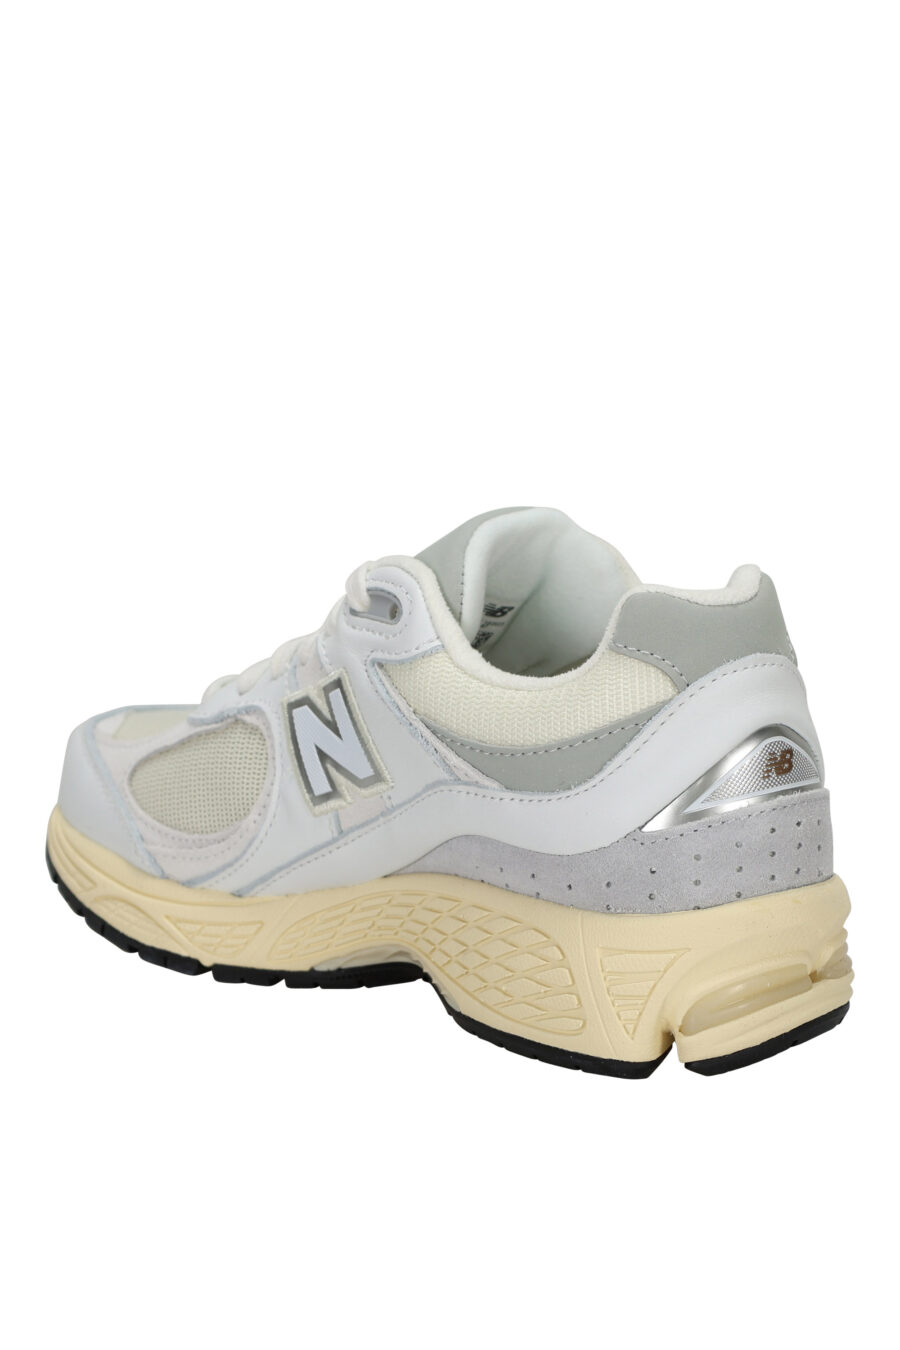 Zapatillas grises mix con blanco y suela beige "2002R" con logo "N" - 197375250014 3